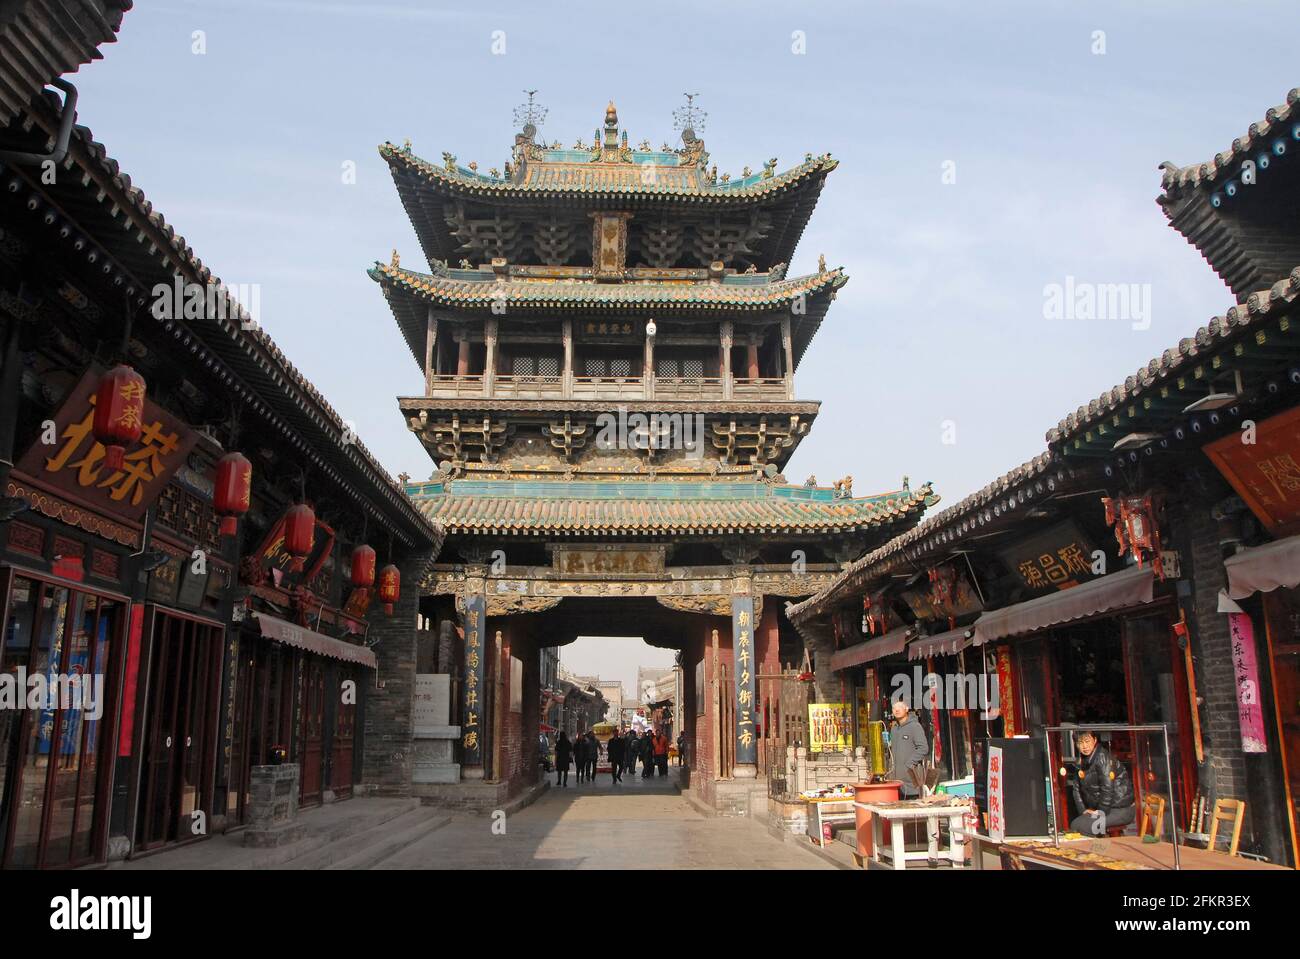 Pingyao dans la province du Shanxi, en Chine : la tour Gushi ou la tour de la ville est le plus haut bâtiment de la vieille partie de Pingyao Banque D'Images